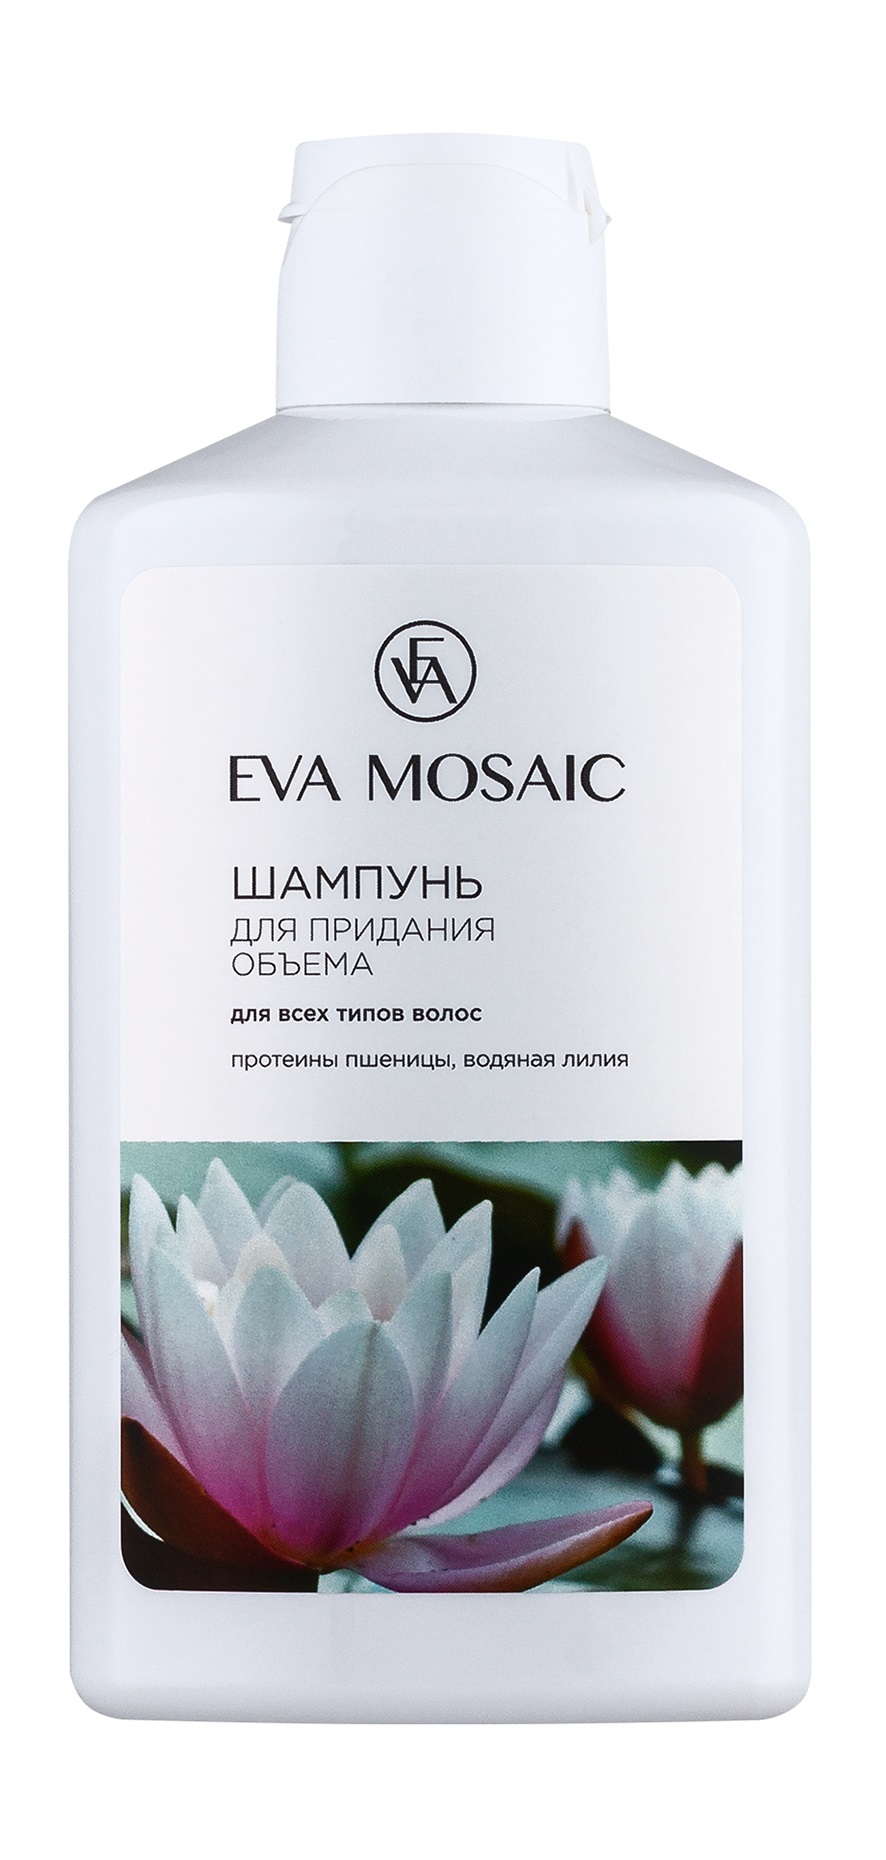 Шампунь Для придания объема Для всех типов волос Eva Mosaic с протеинами пшеницы